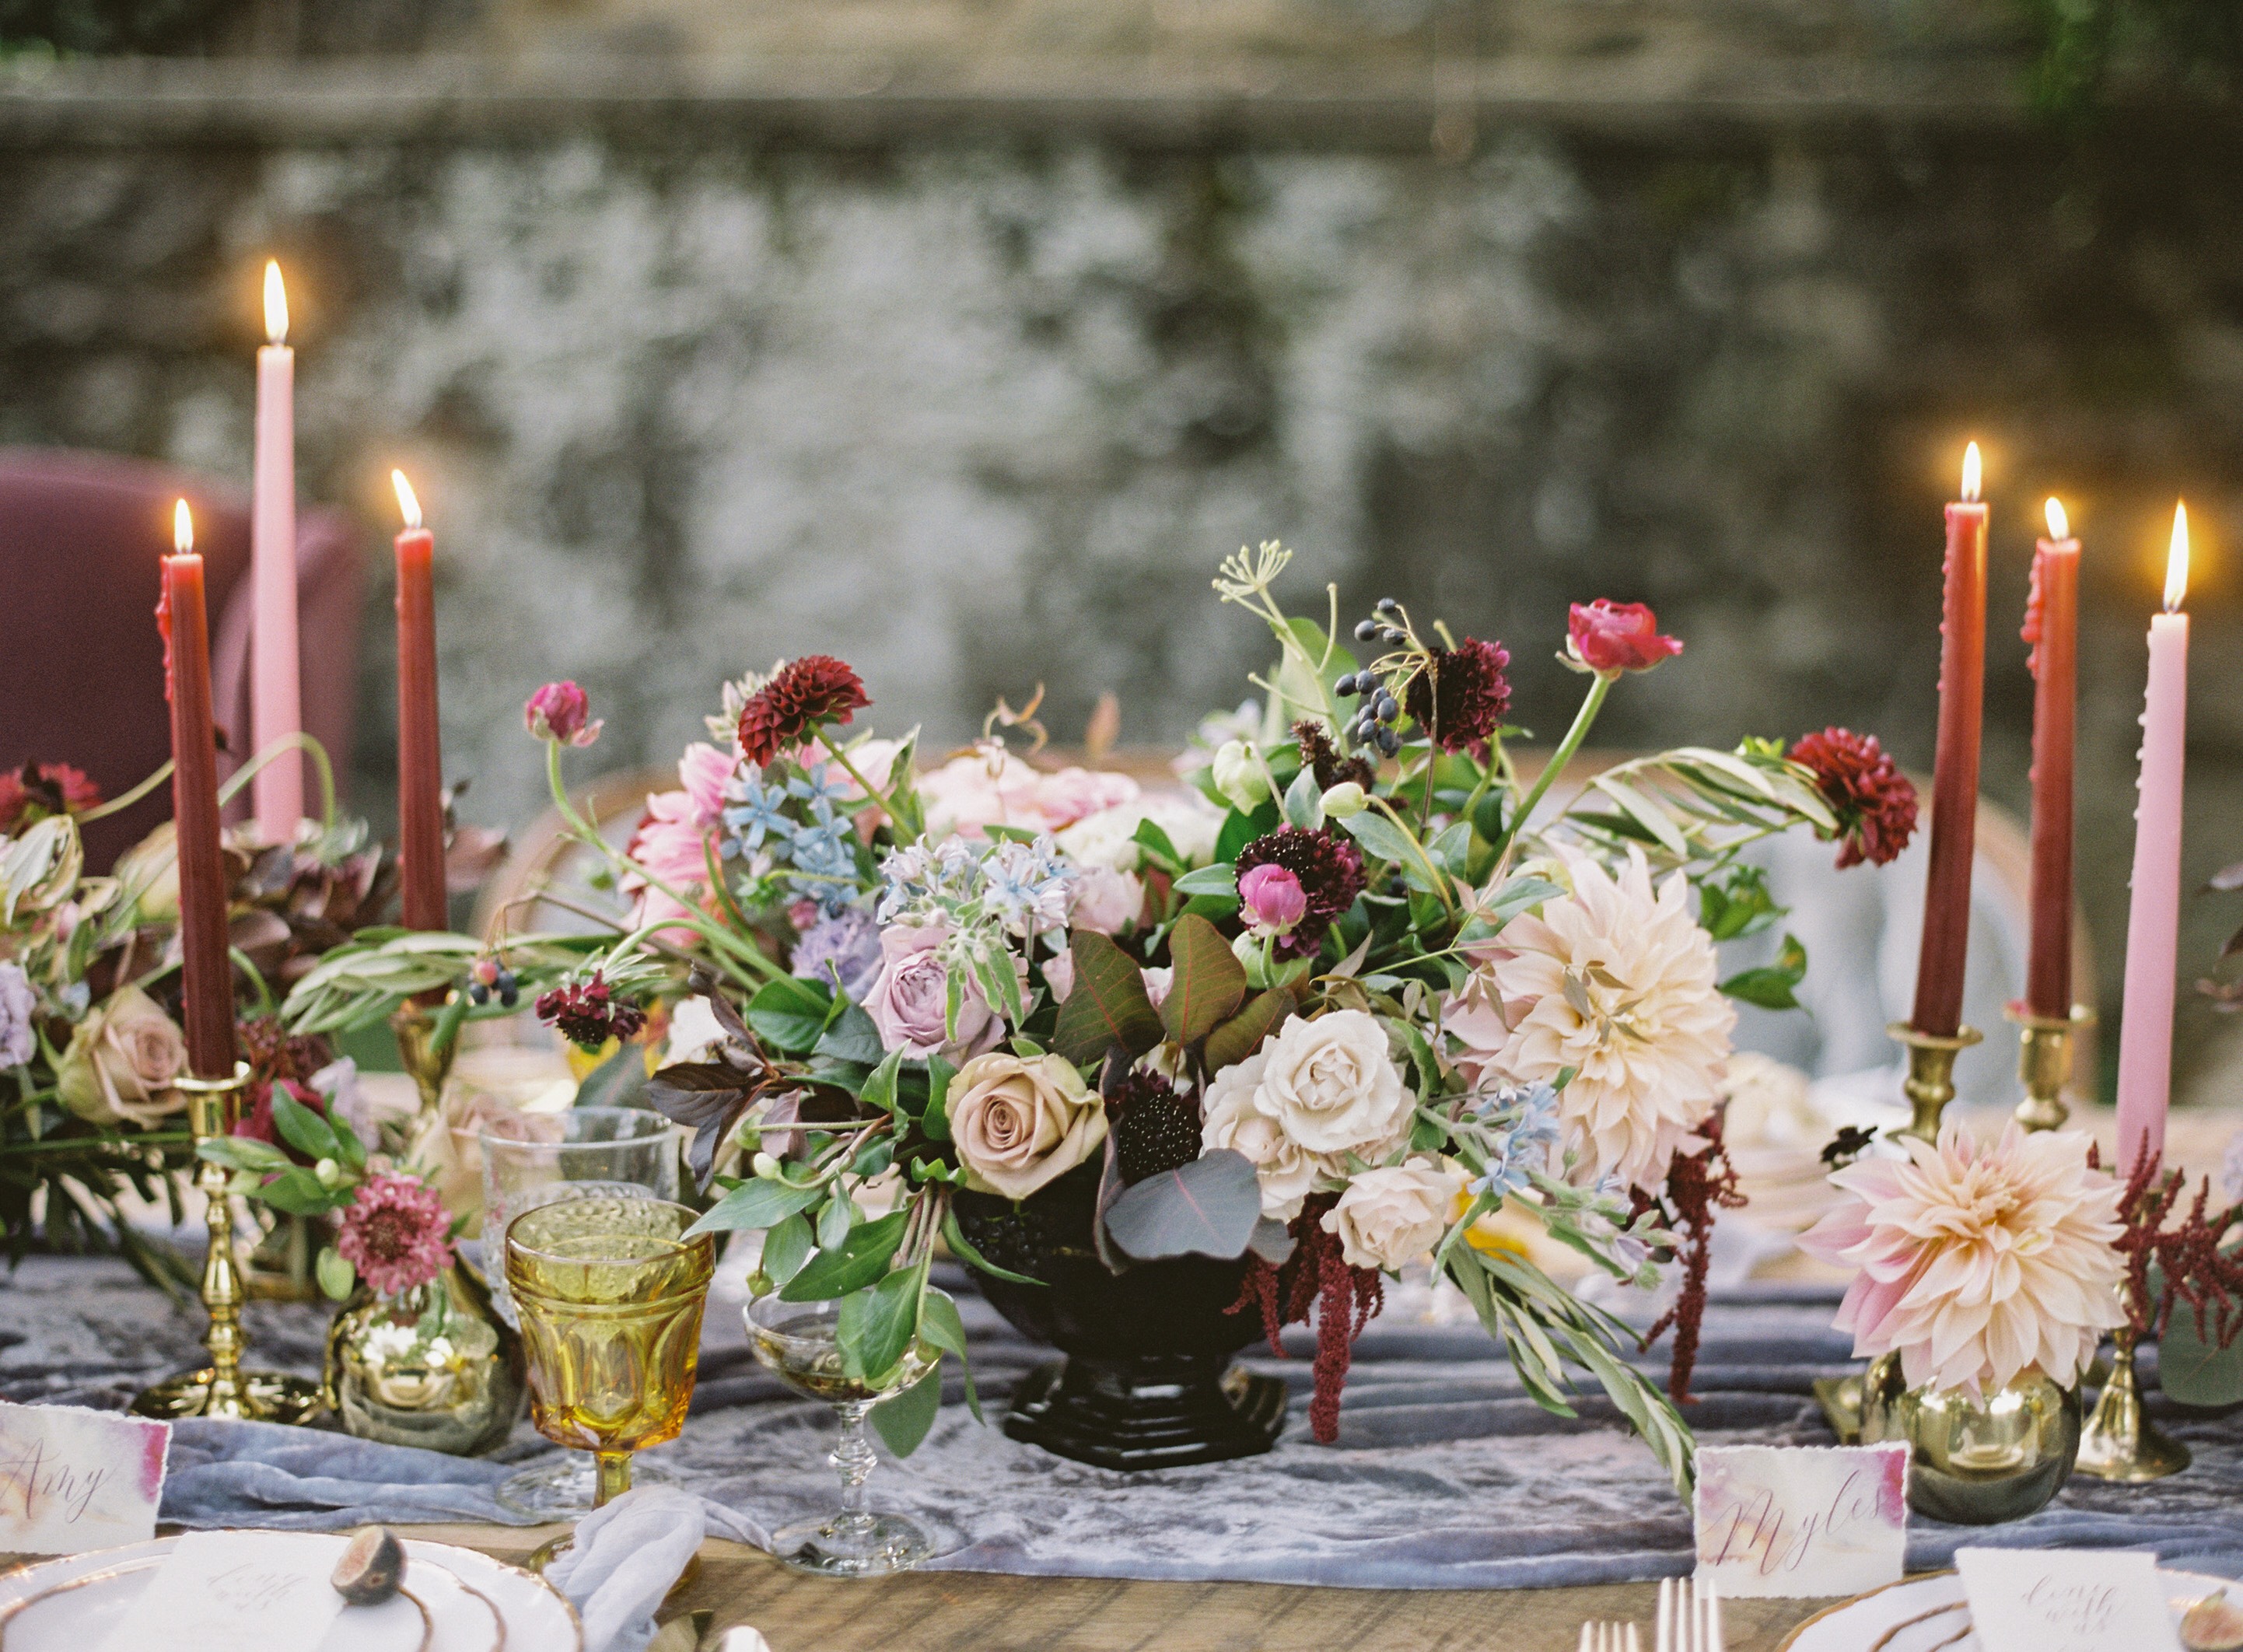 A flower arrangement on a dinner table